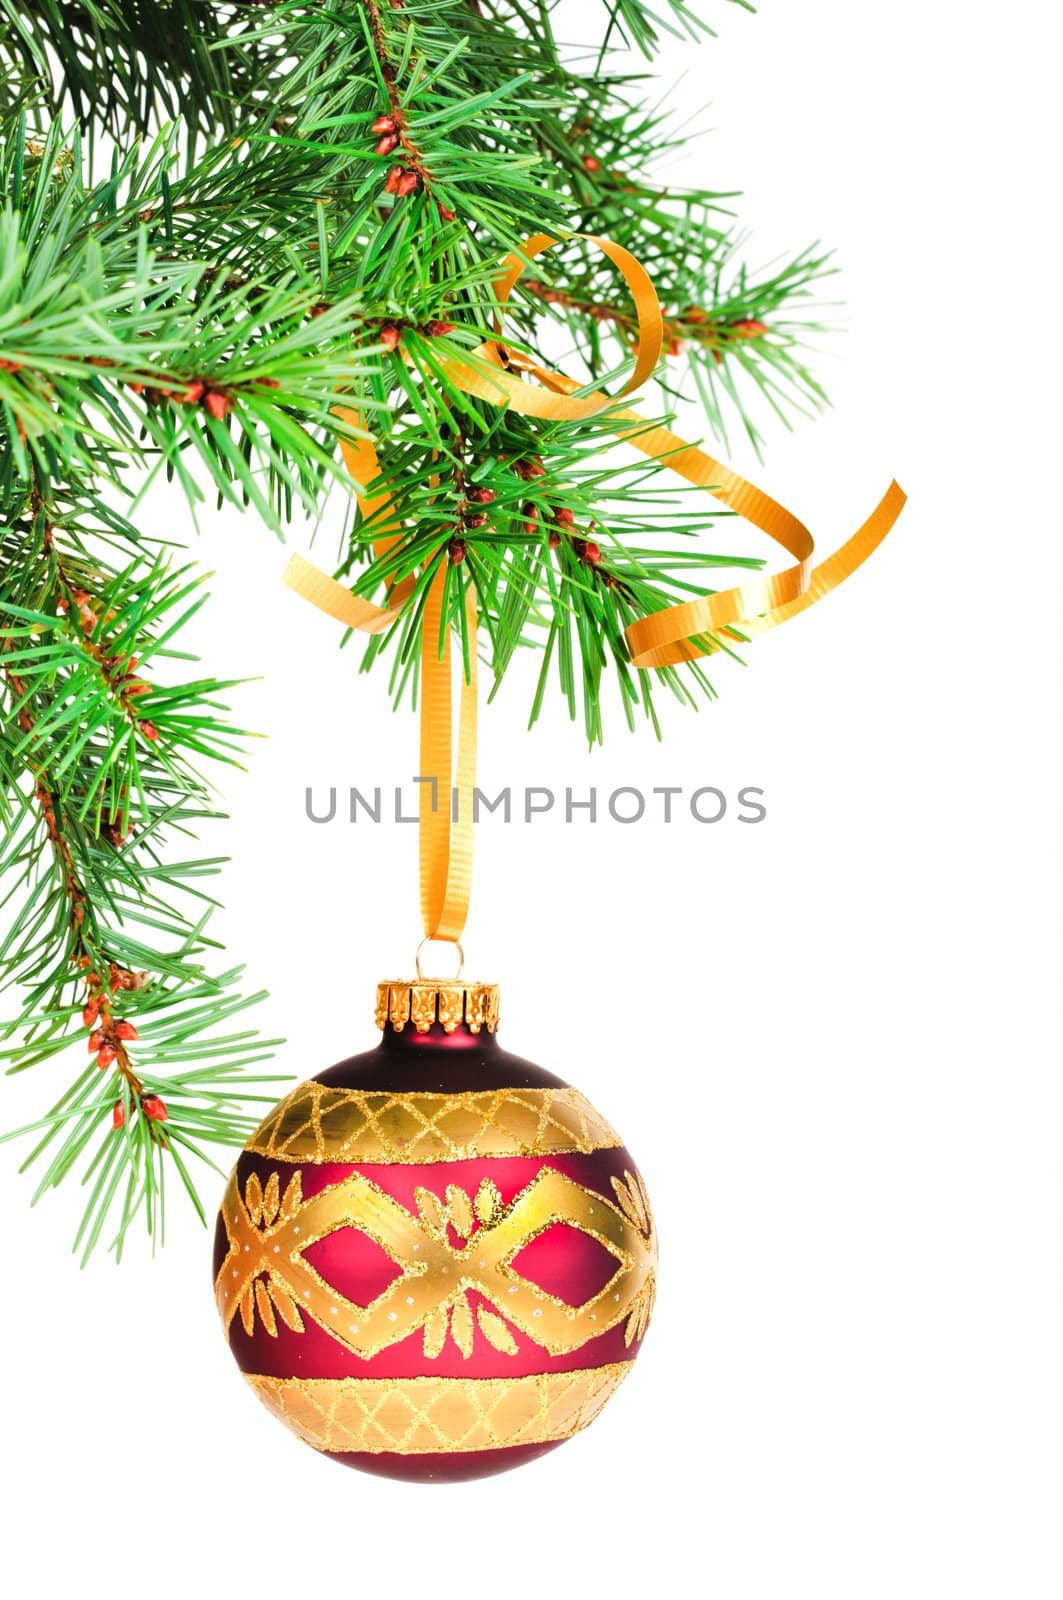 Decorative Christmas ball hangs on the Christmas tree.